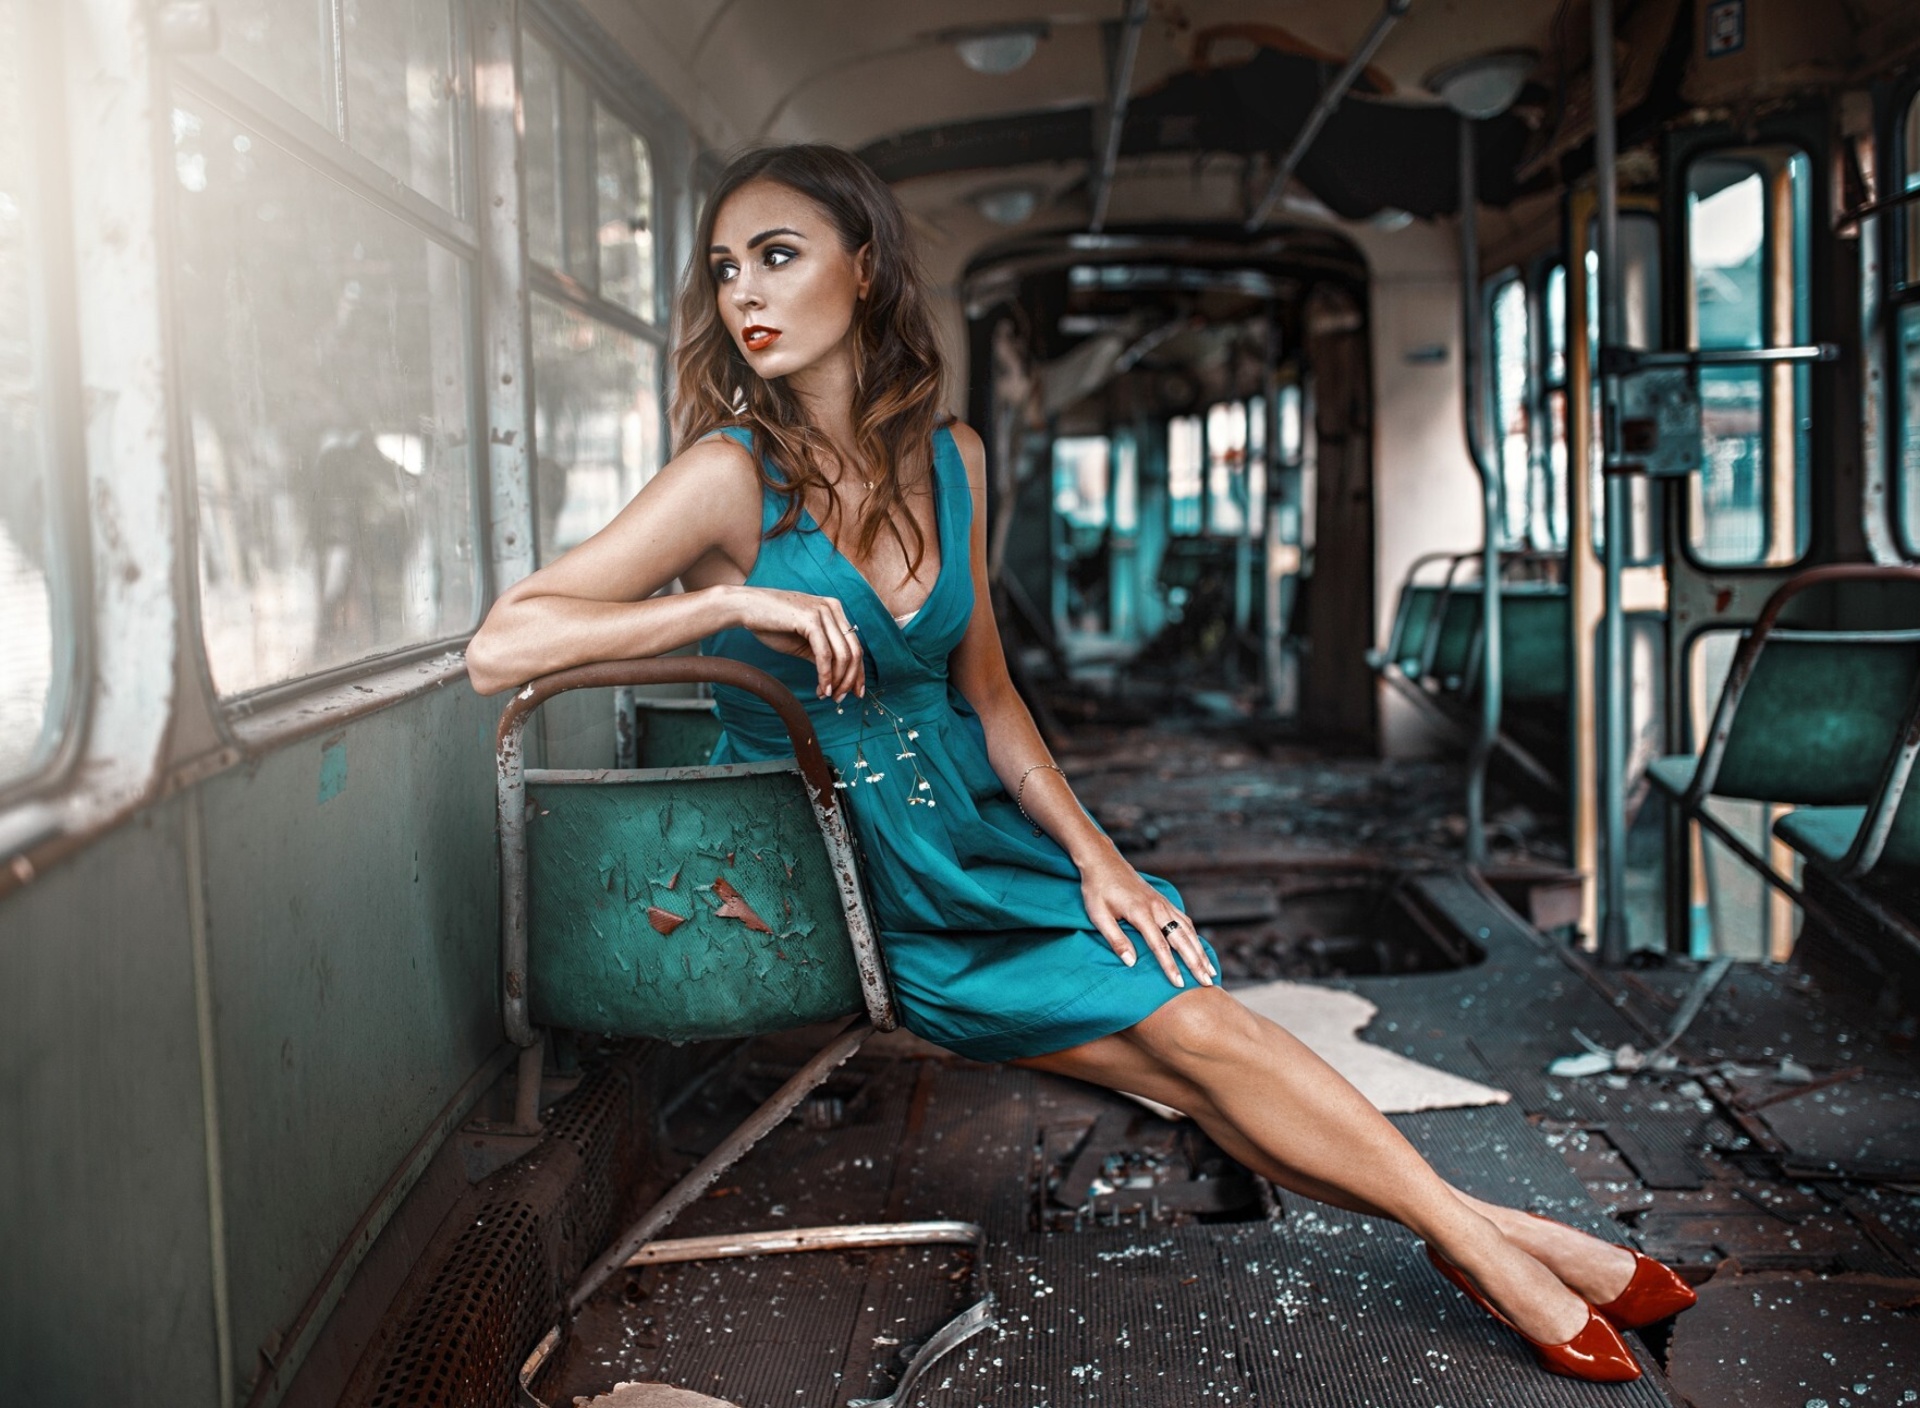 Обои Girl in abandoned train 1920x1408